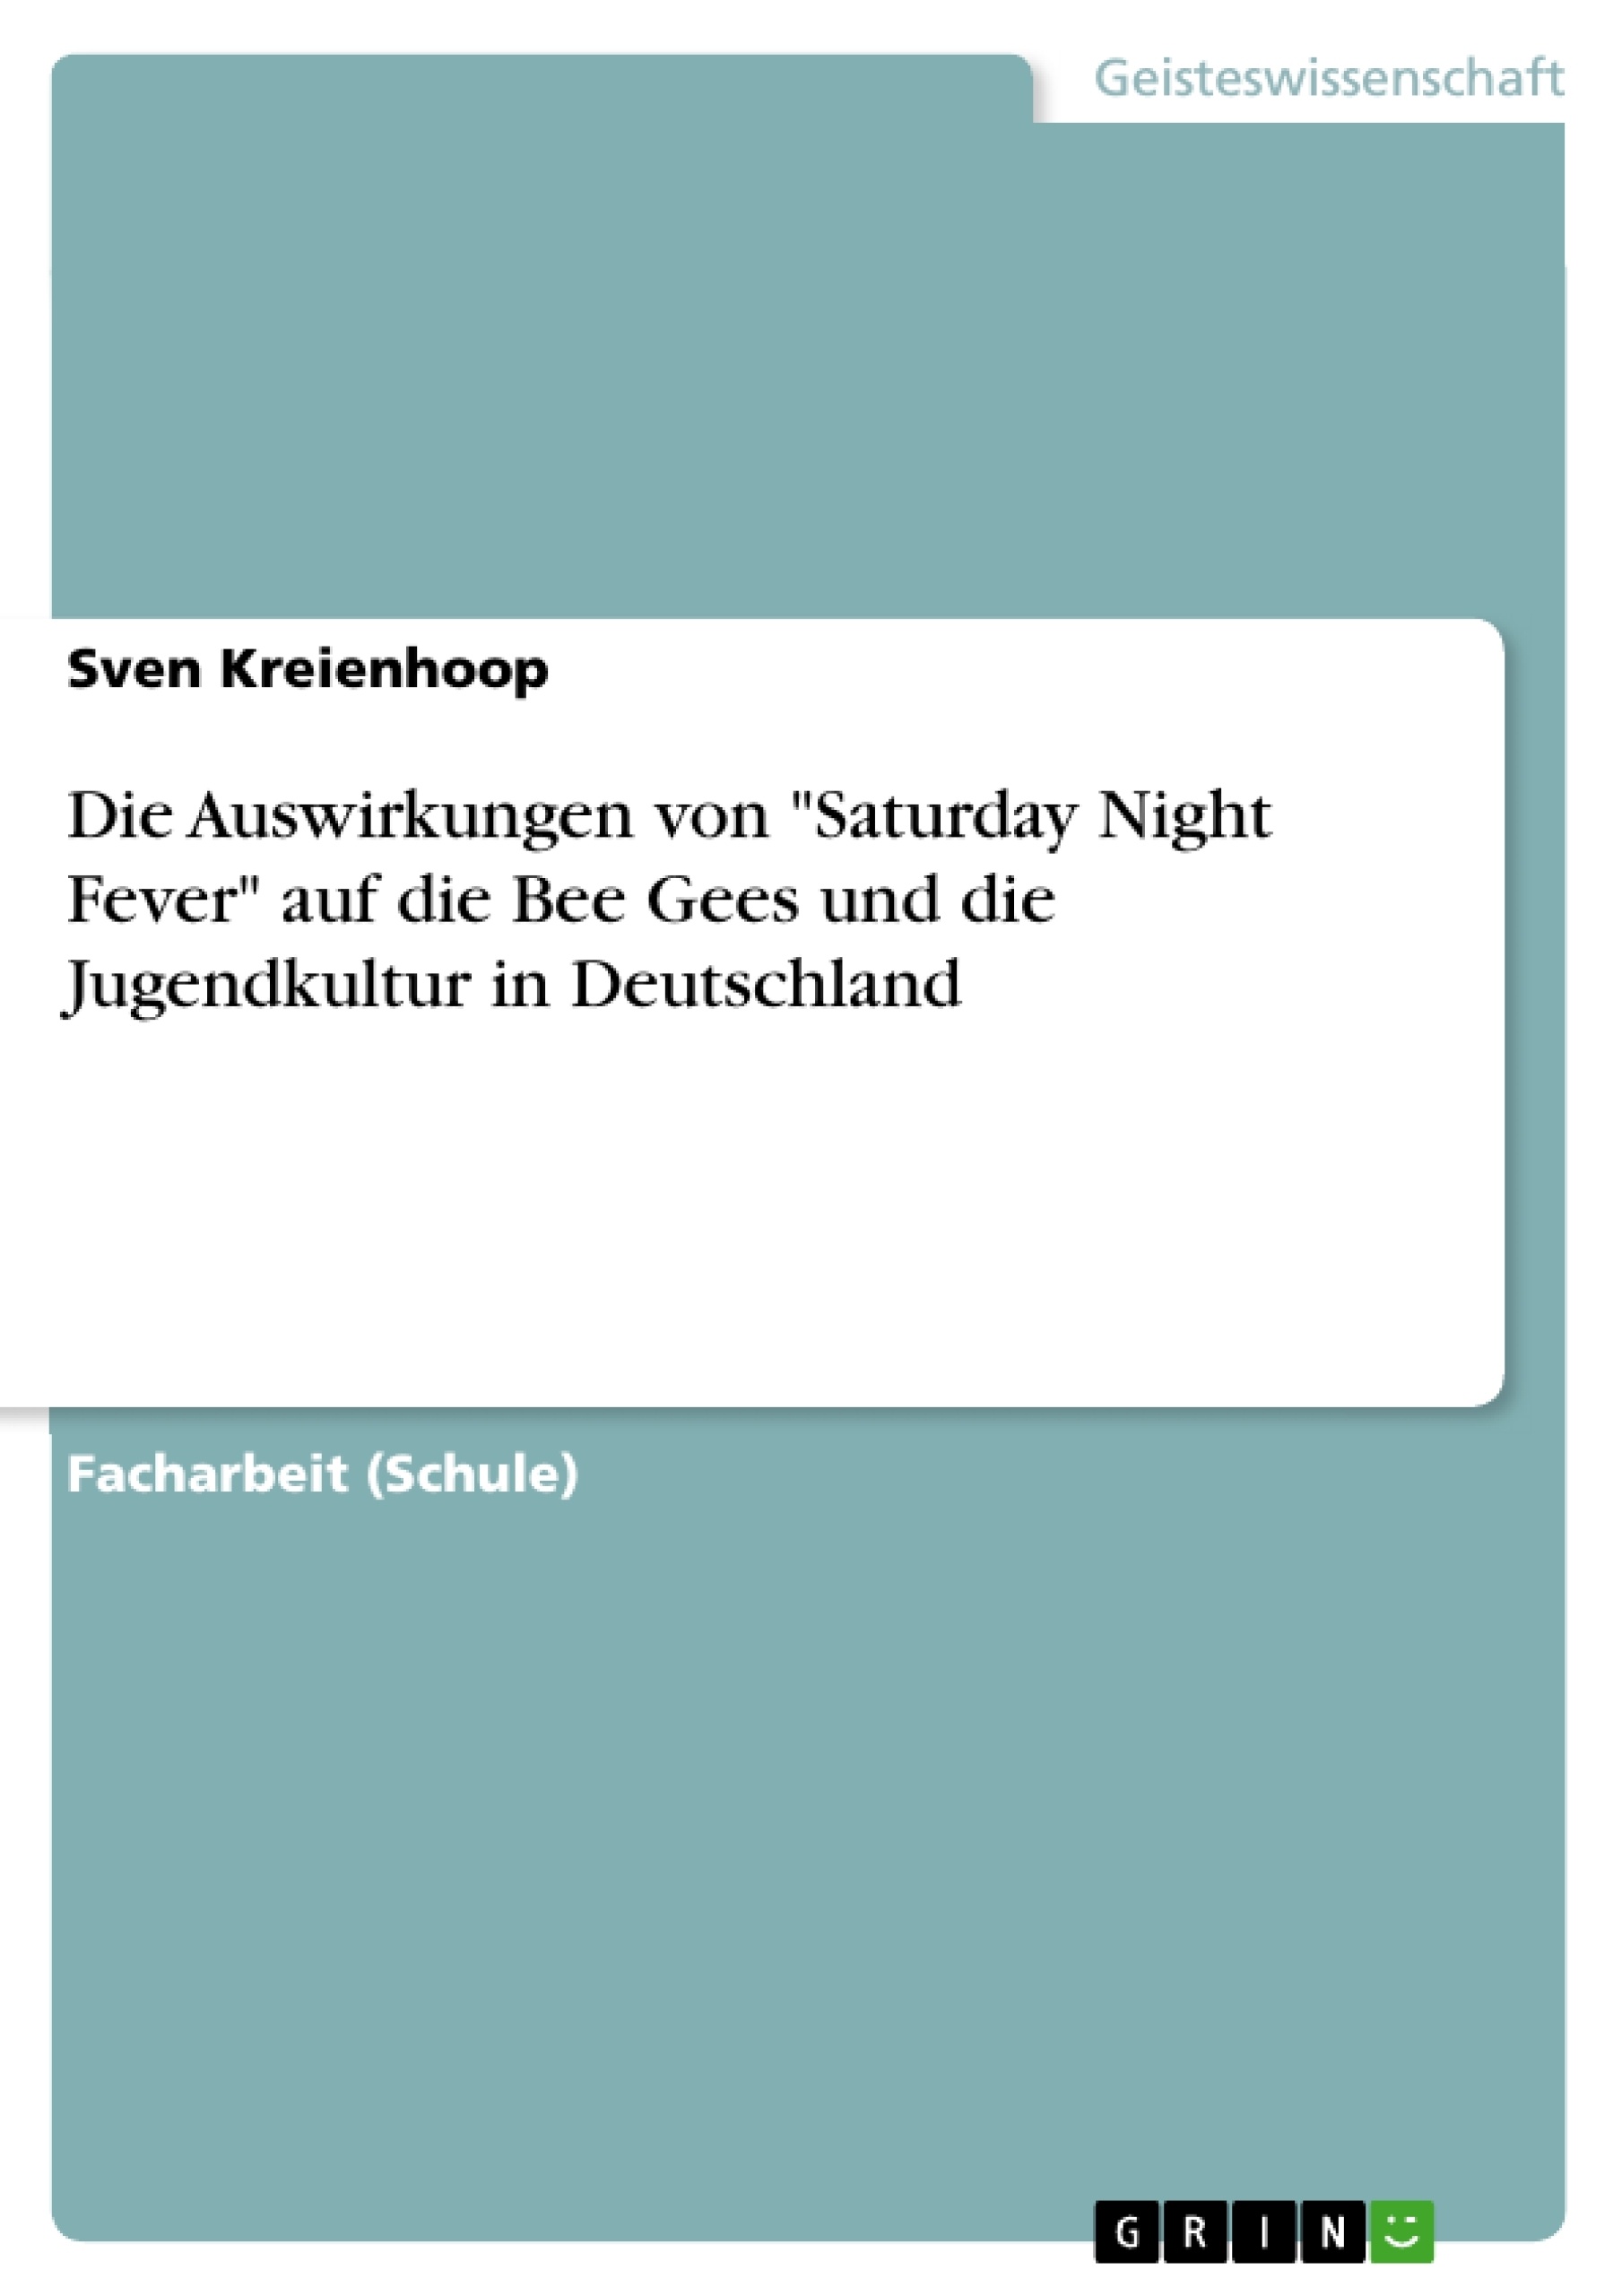 Título: Die Auswirkungen von "Saturday Night Fever" auf die Bee Gees und die Jugendkultur in Deutschland